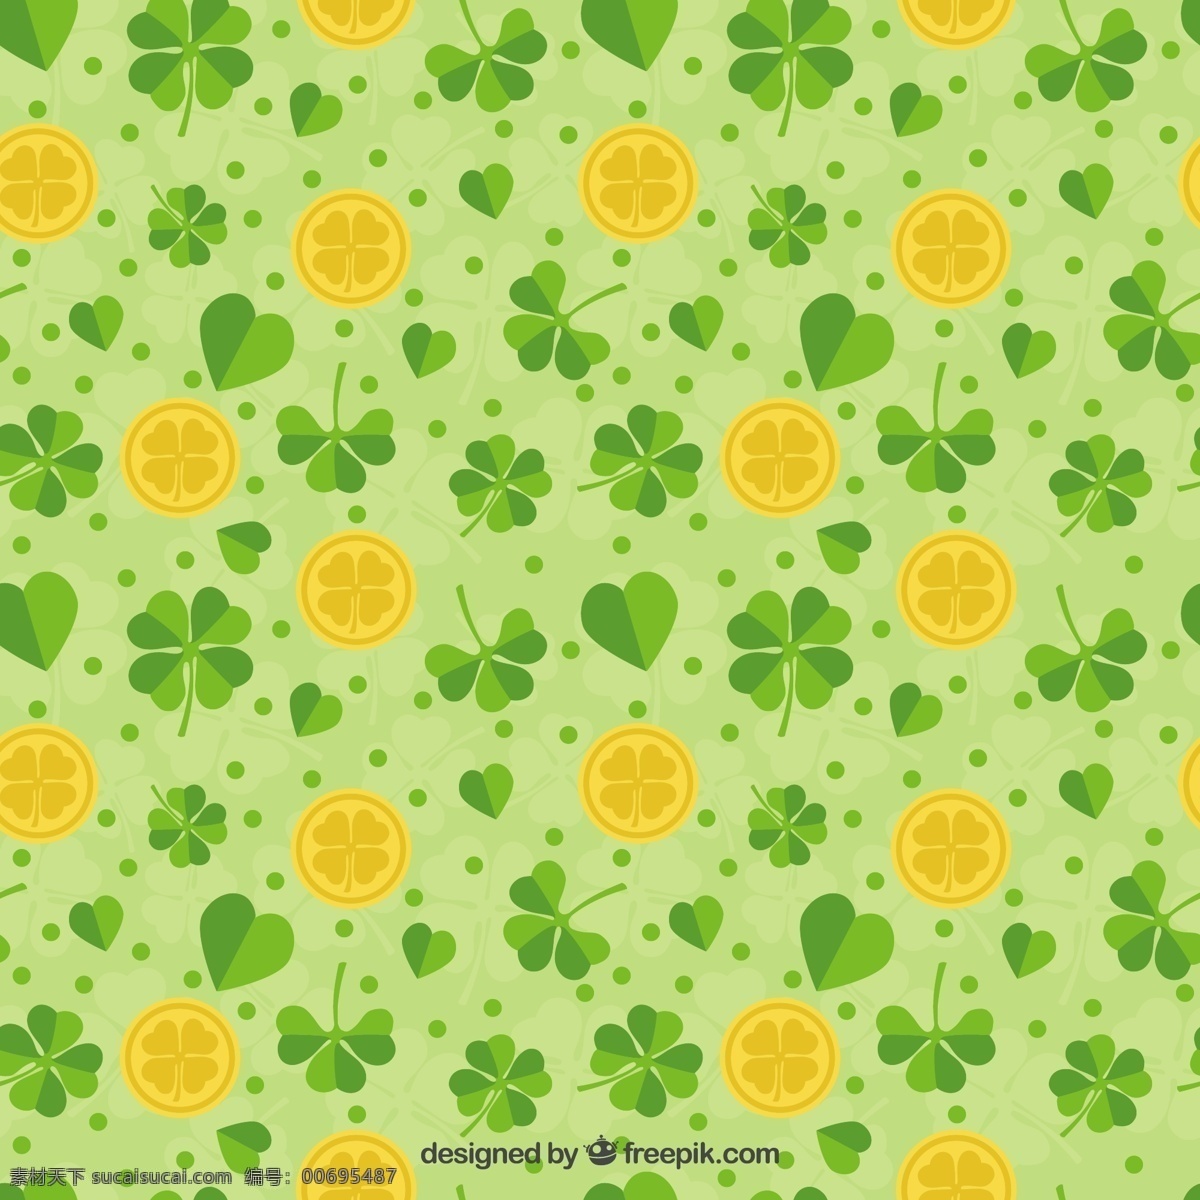 帕特里 克日 三叶草 模式 背景 黄金 纹理 绿色的春天 绿色的背景 节日 金背景 象征 春天 背景的绿色 纹理背景 爱尔兰 月 日 背景模式 背景纹理